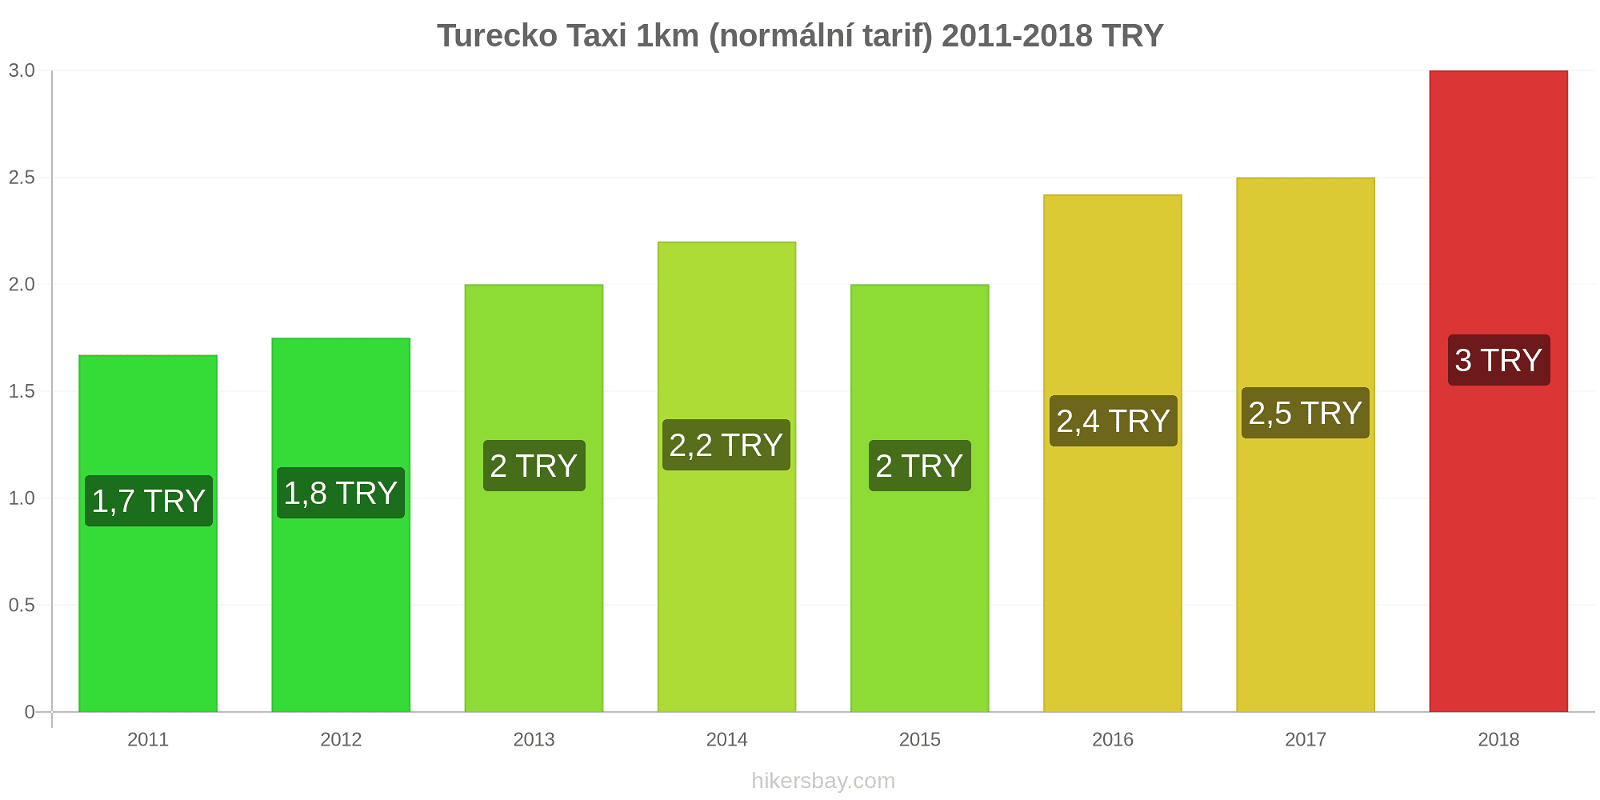 Turecko změny cen Taxi 1km (normální tarif) hikersbay.com